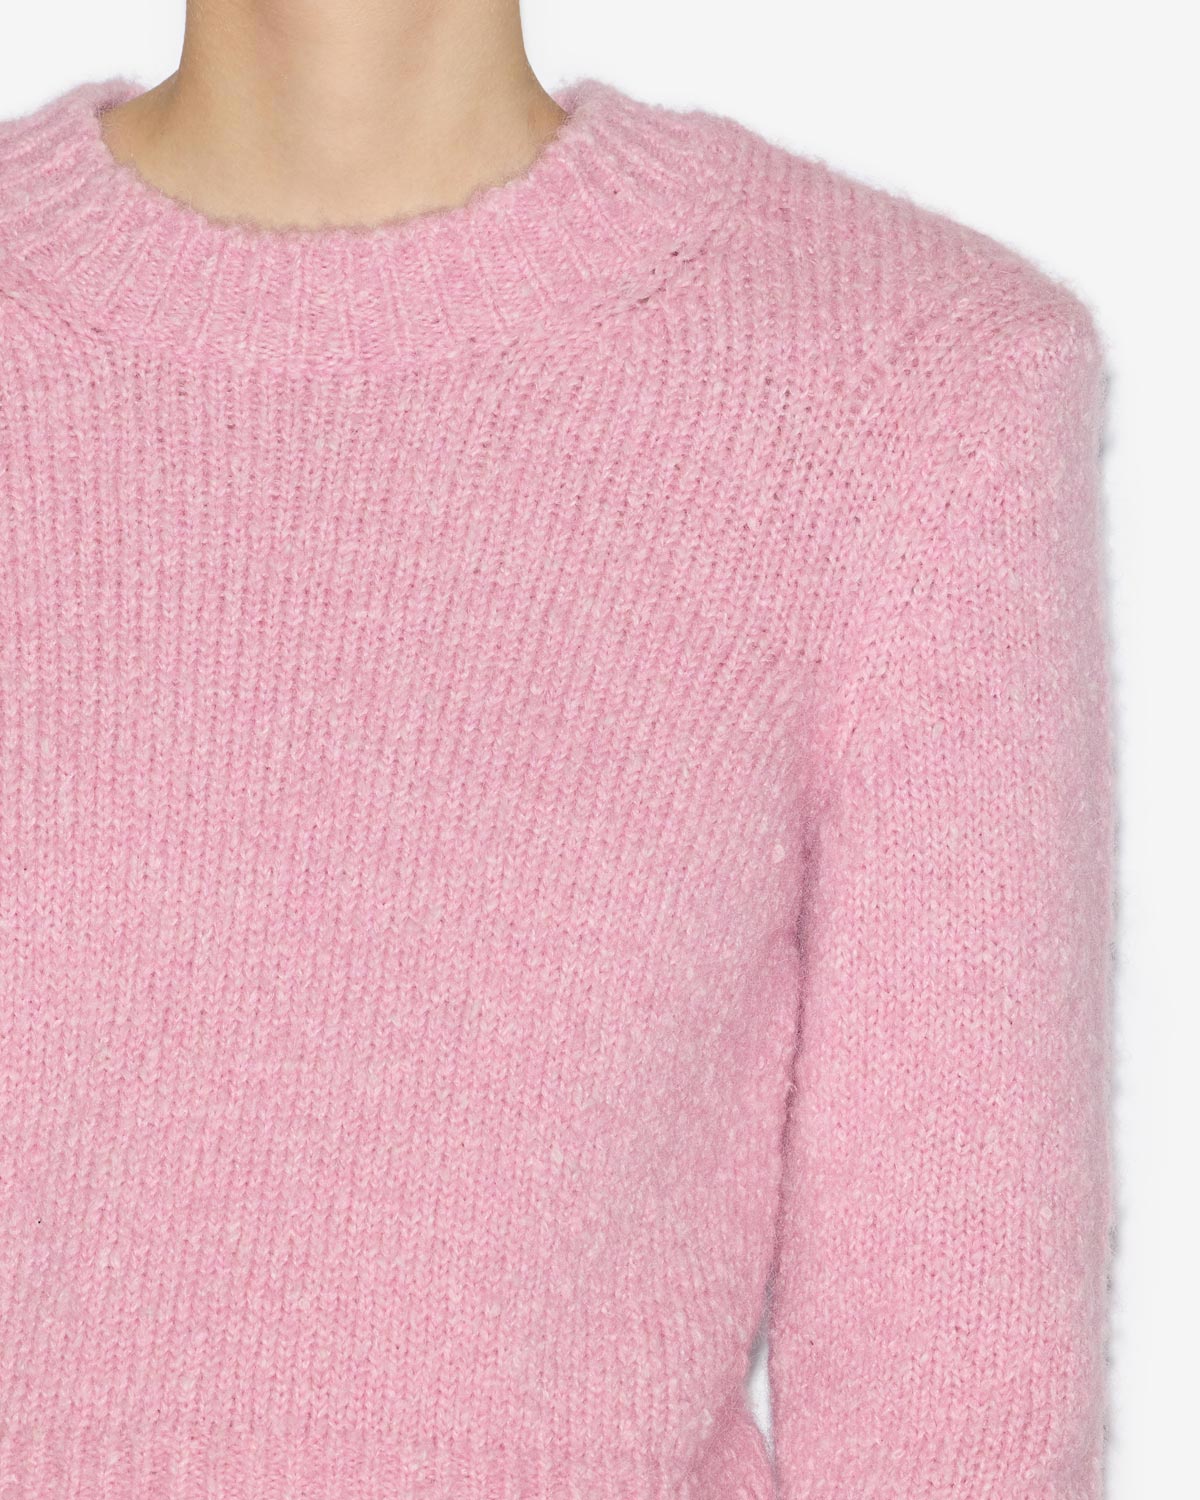 칼로(kalo) 스웨터 Woman Light pink 2